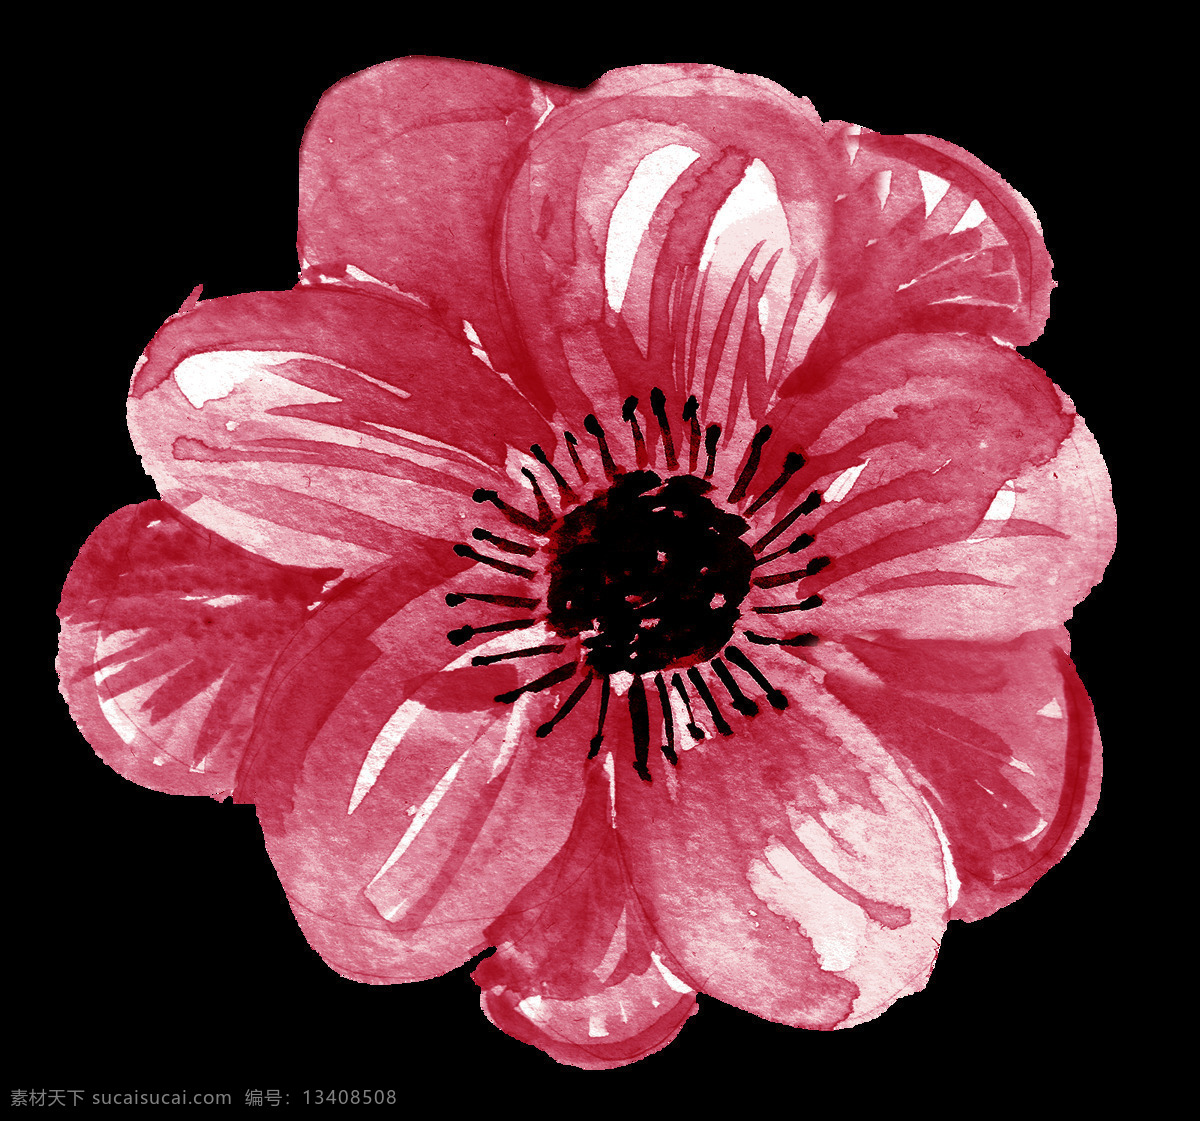 红色 花朵 花卉 免 抠 图 元素 花瓣 卡通素材 可爱 免抠 免抠图 矢量素材